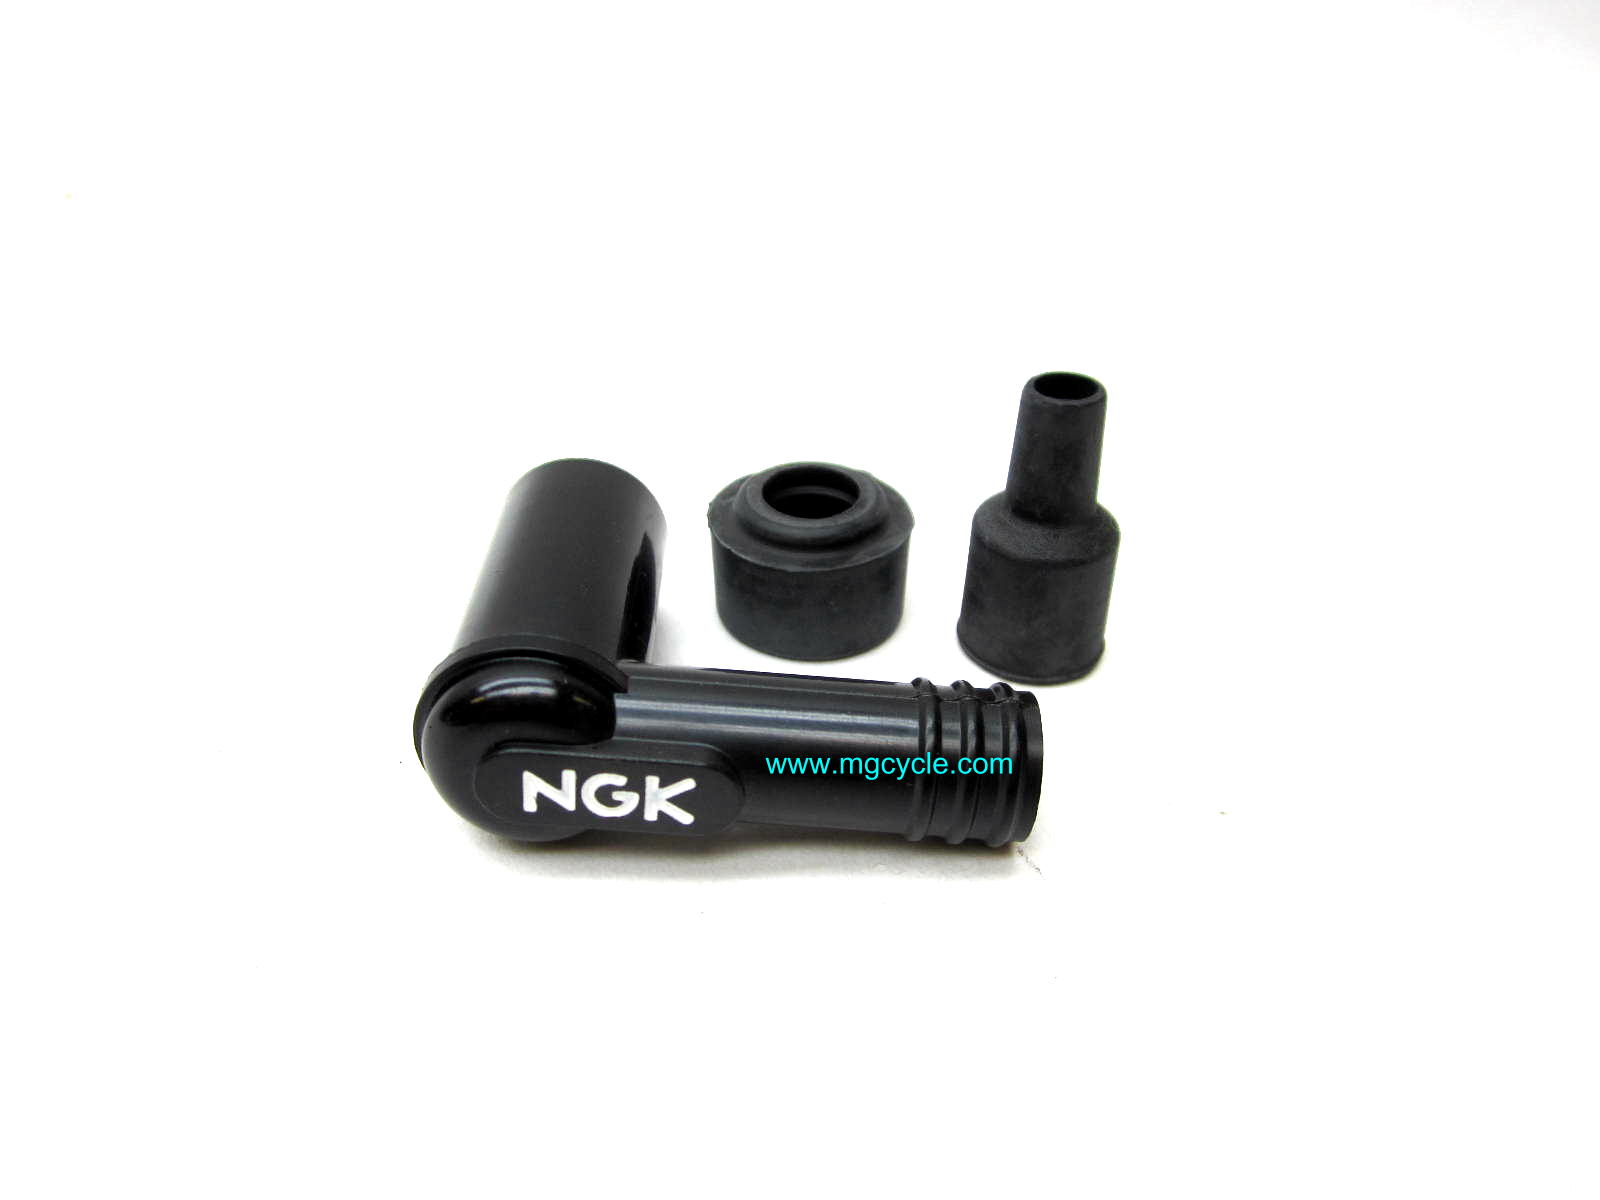 NGK waterproof spark plug cap, resistor